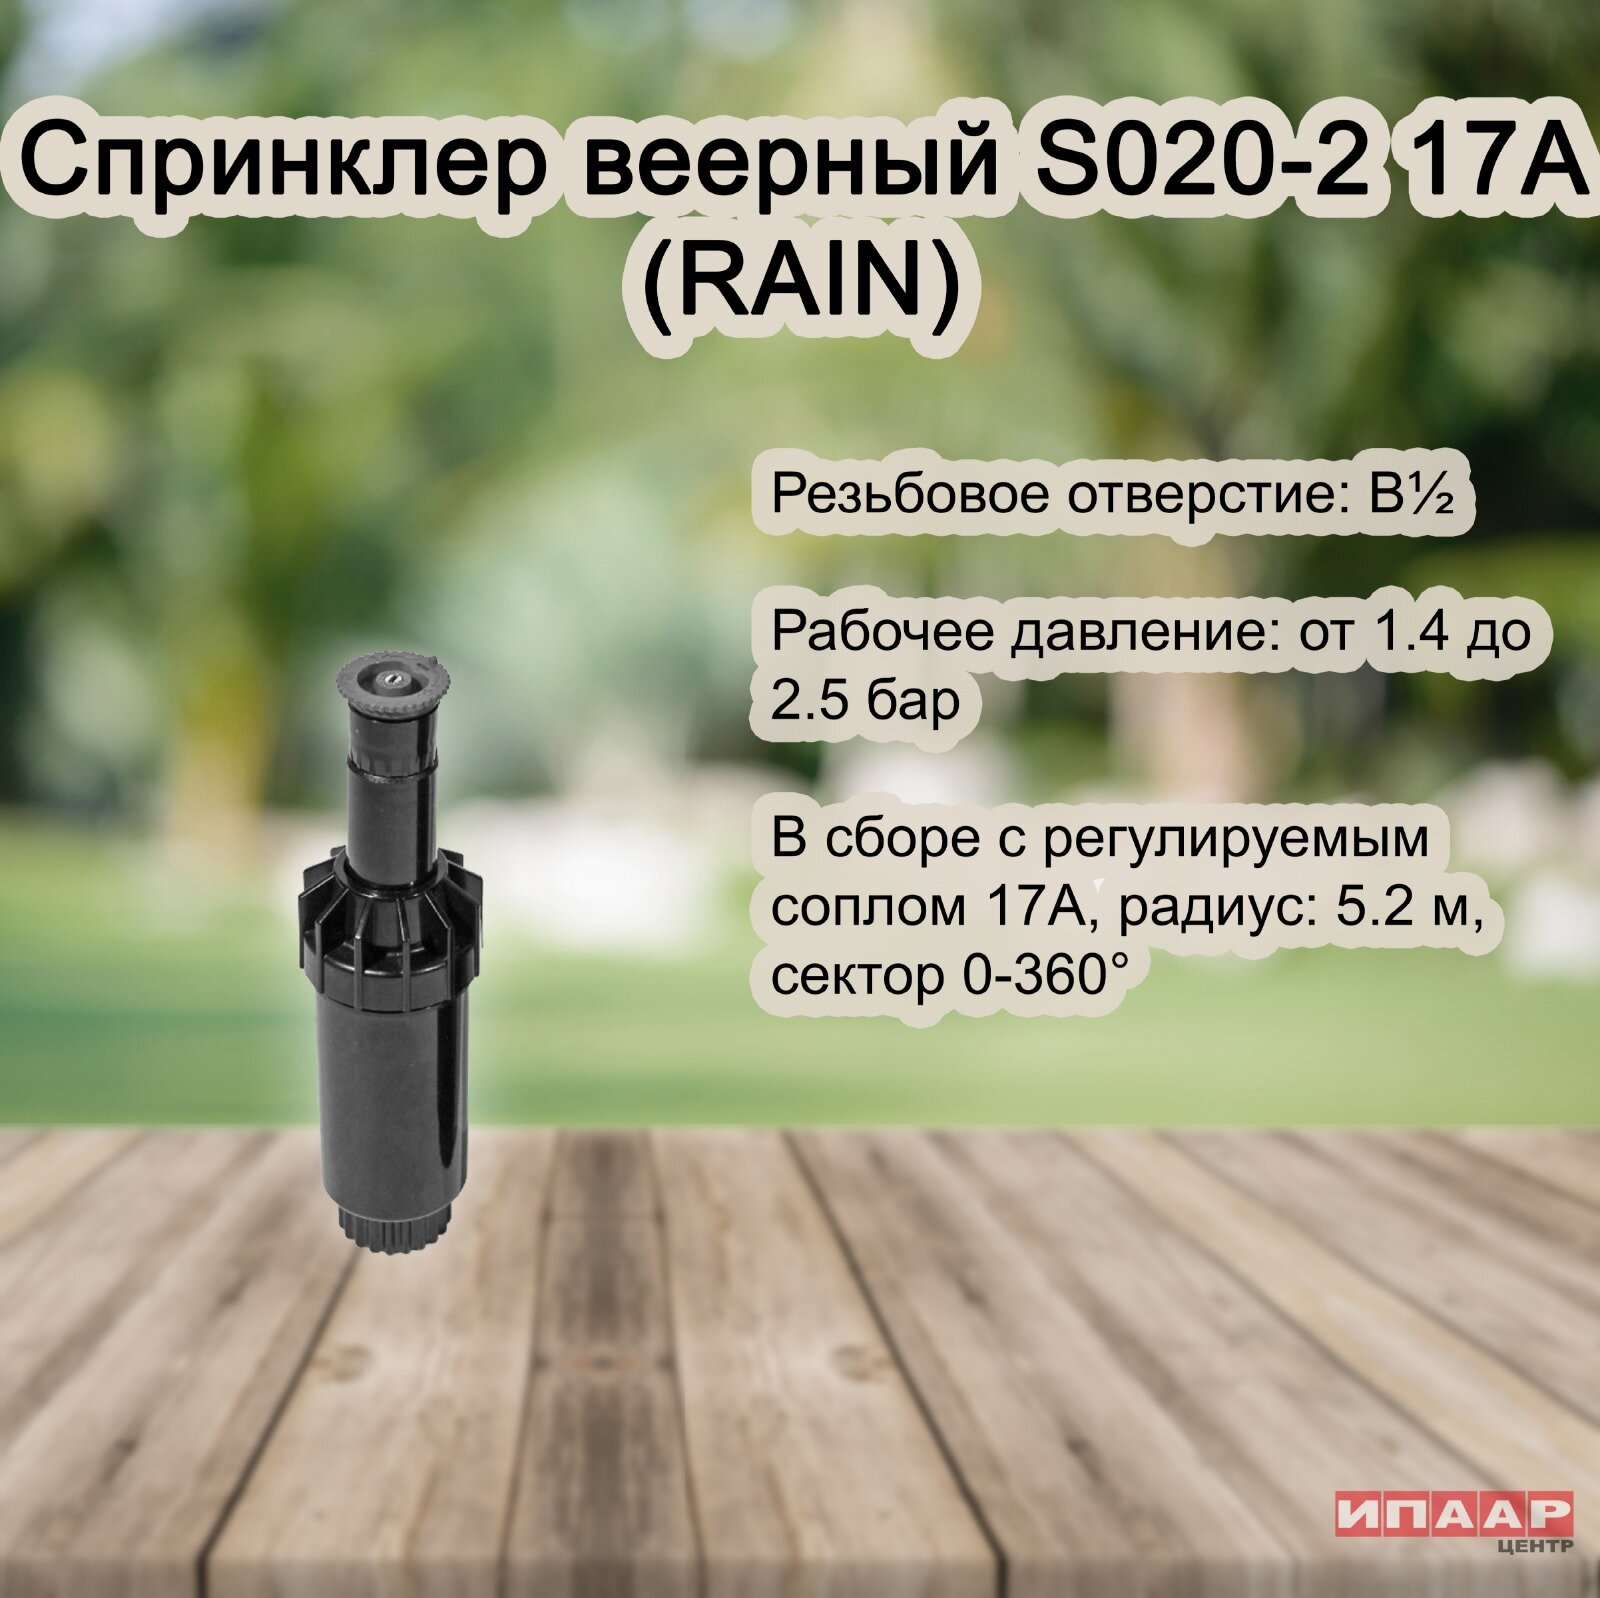 Спринклер веерный S020-2 17A (RAIN)